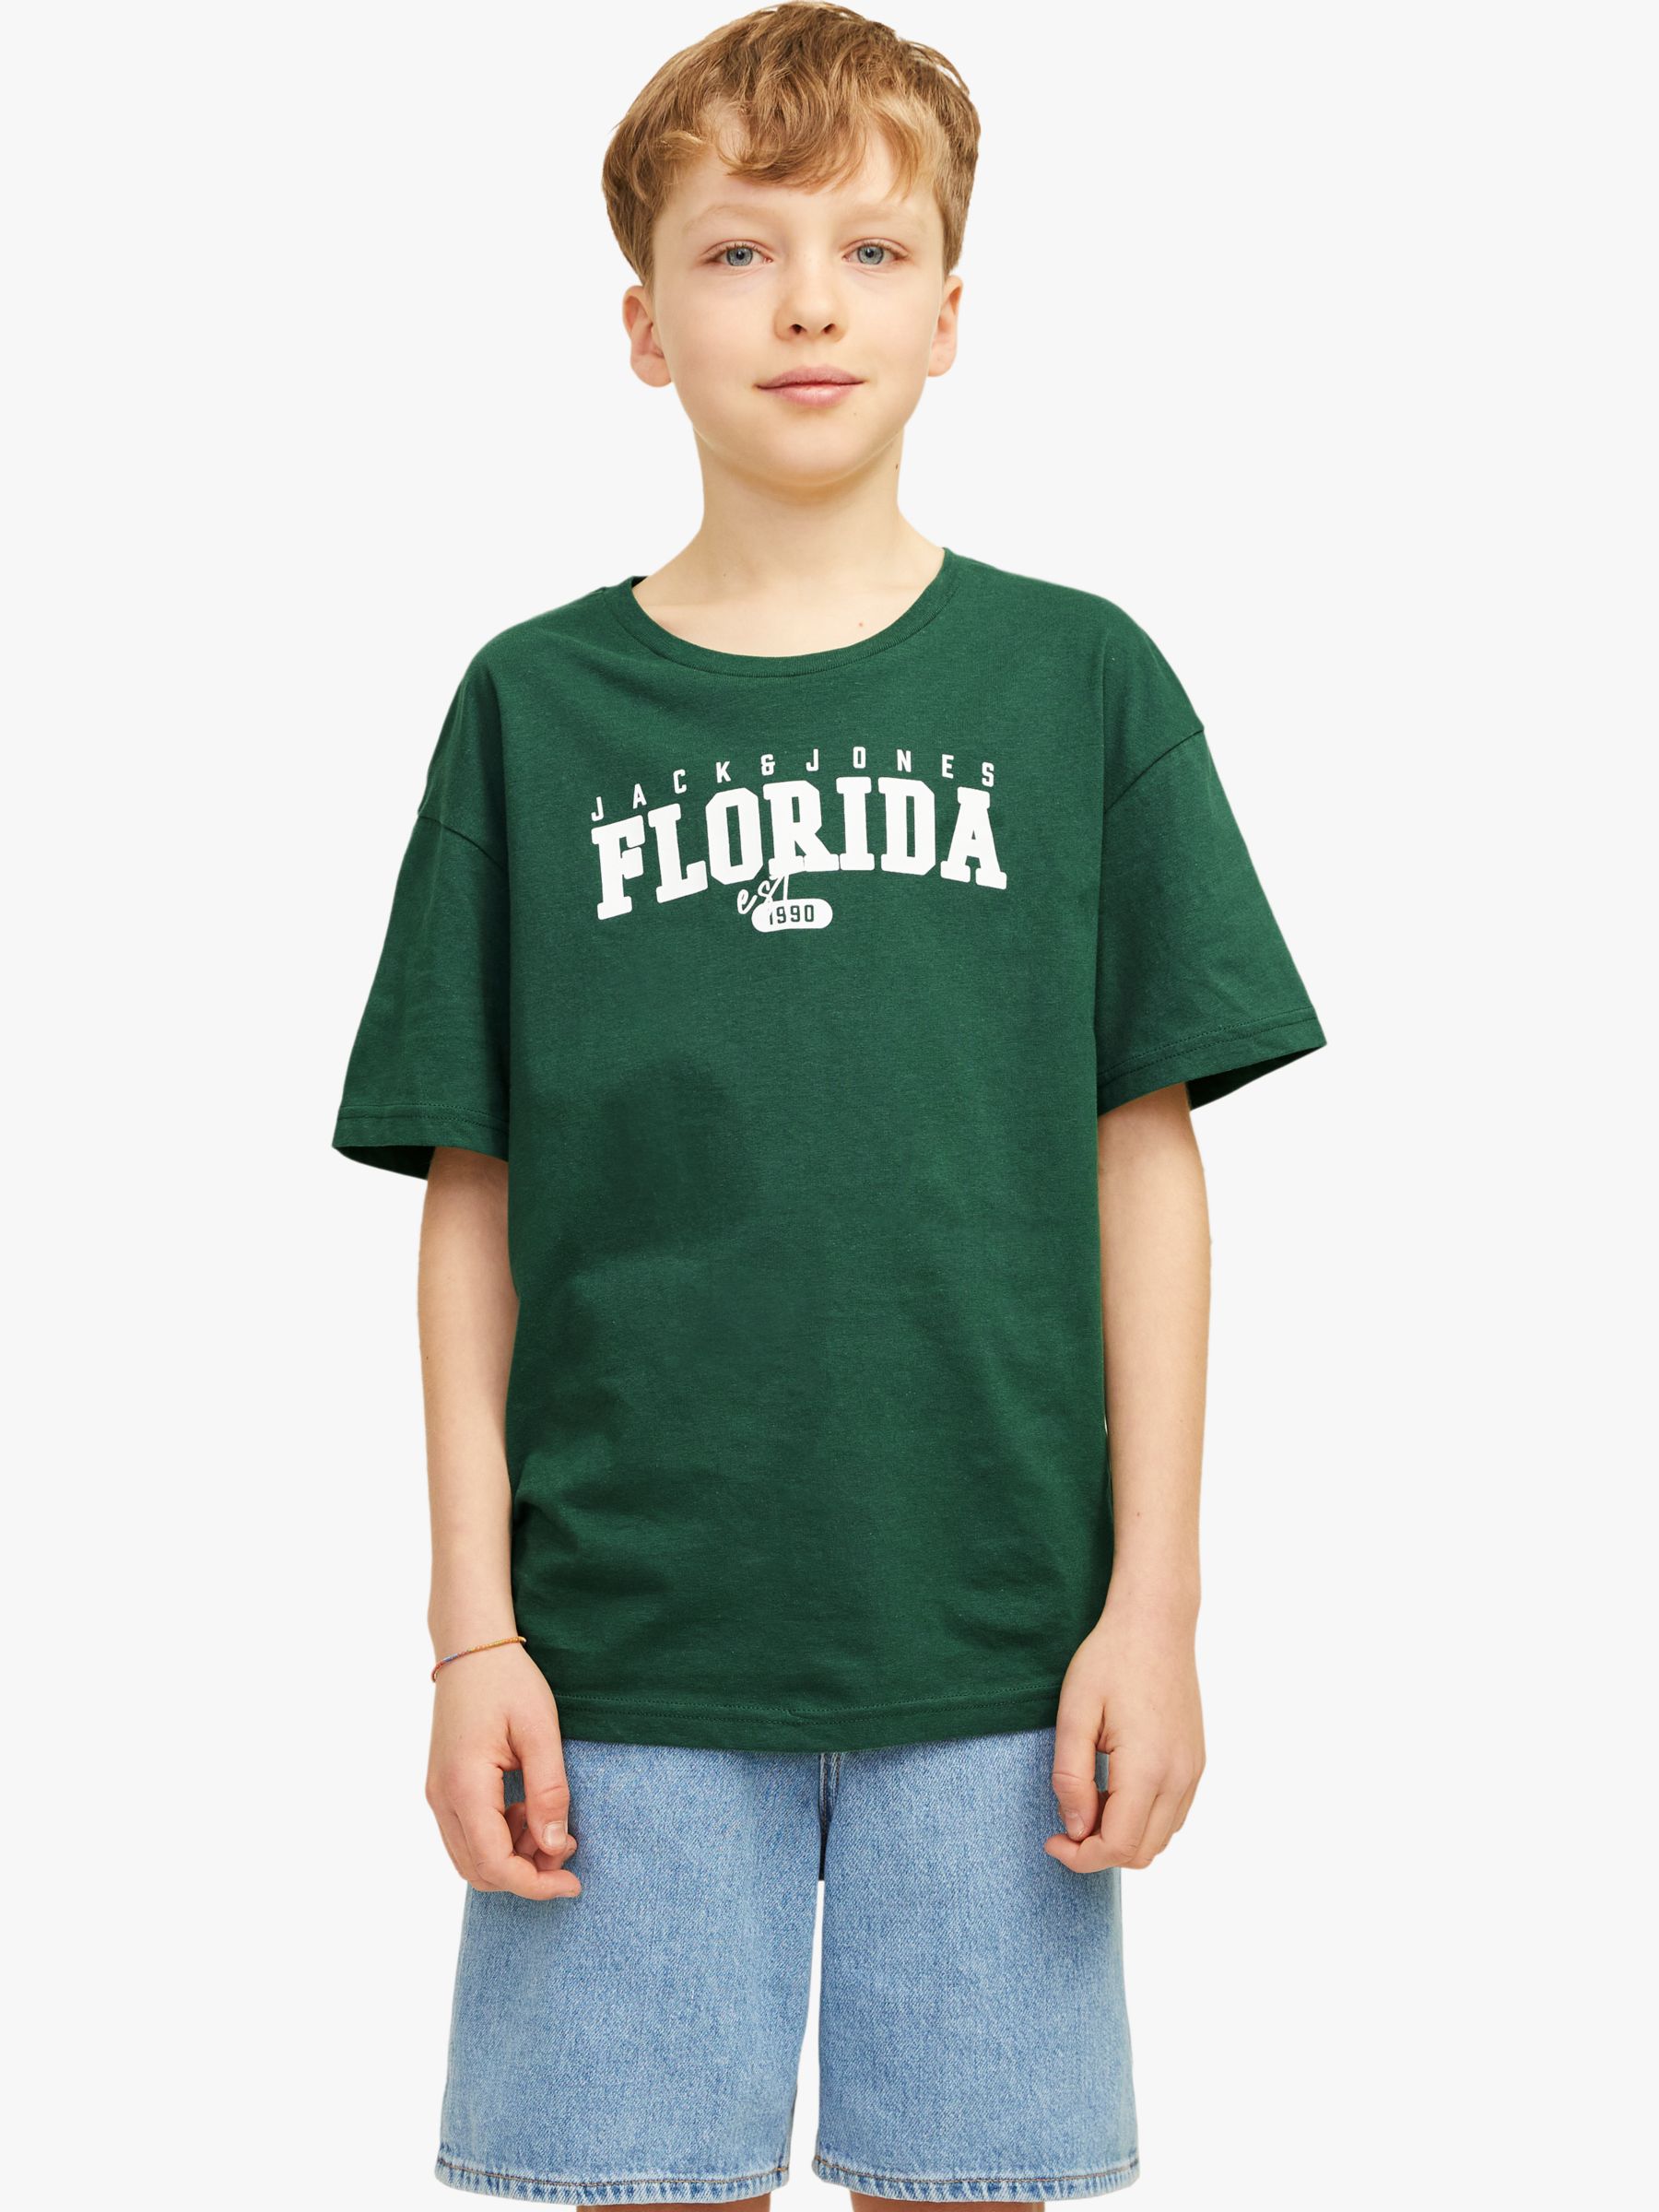 Jack Jones Kids' Cory Florida Cotton T-Shirt, Dark Green, 14 years